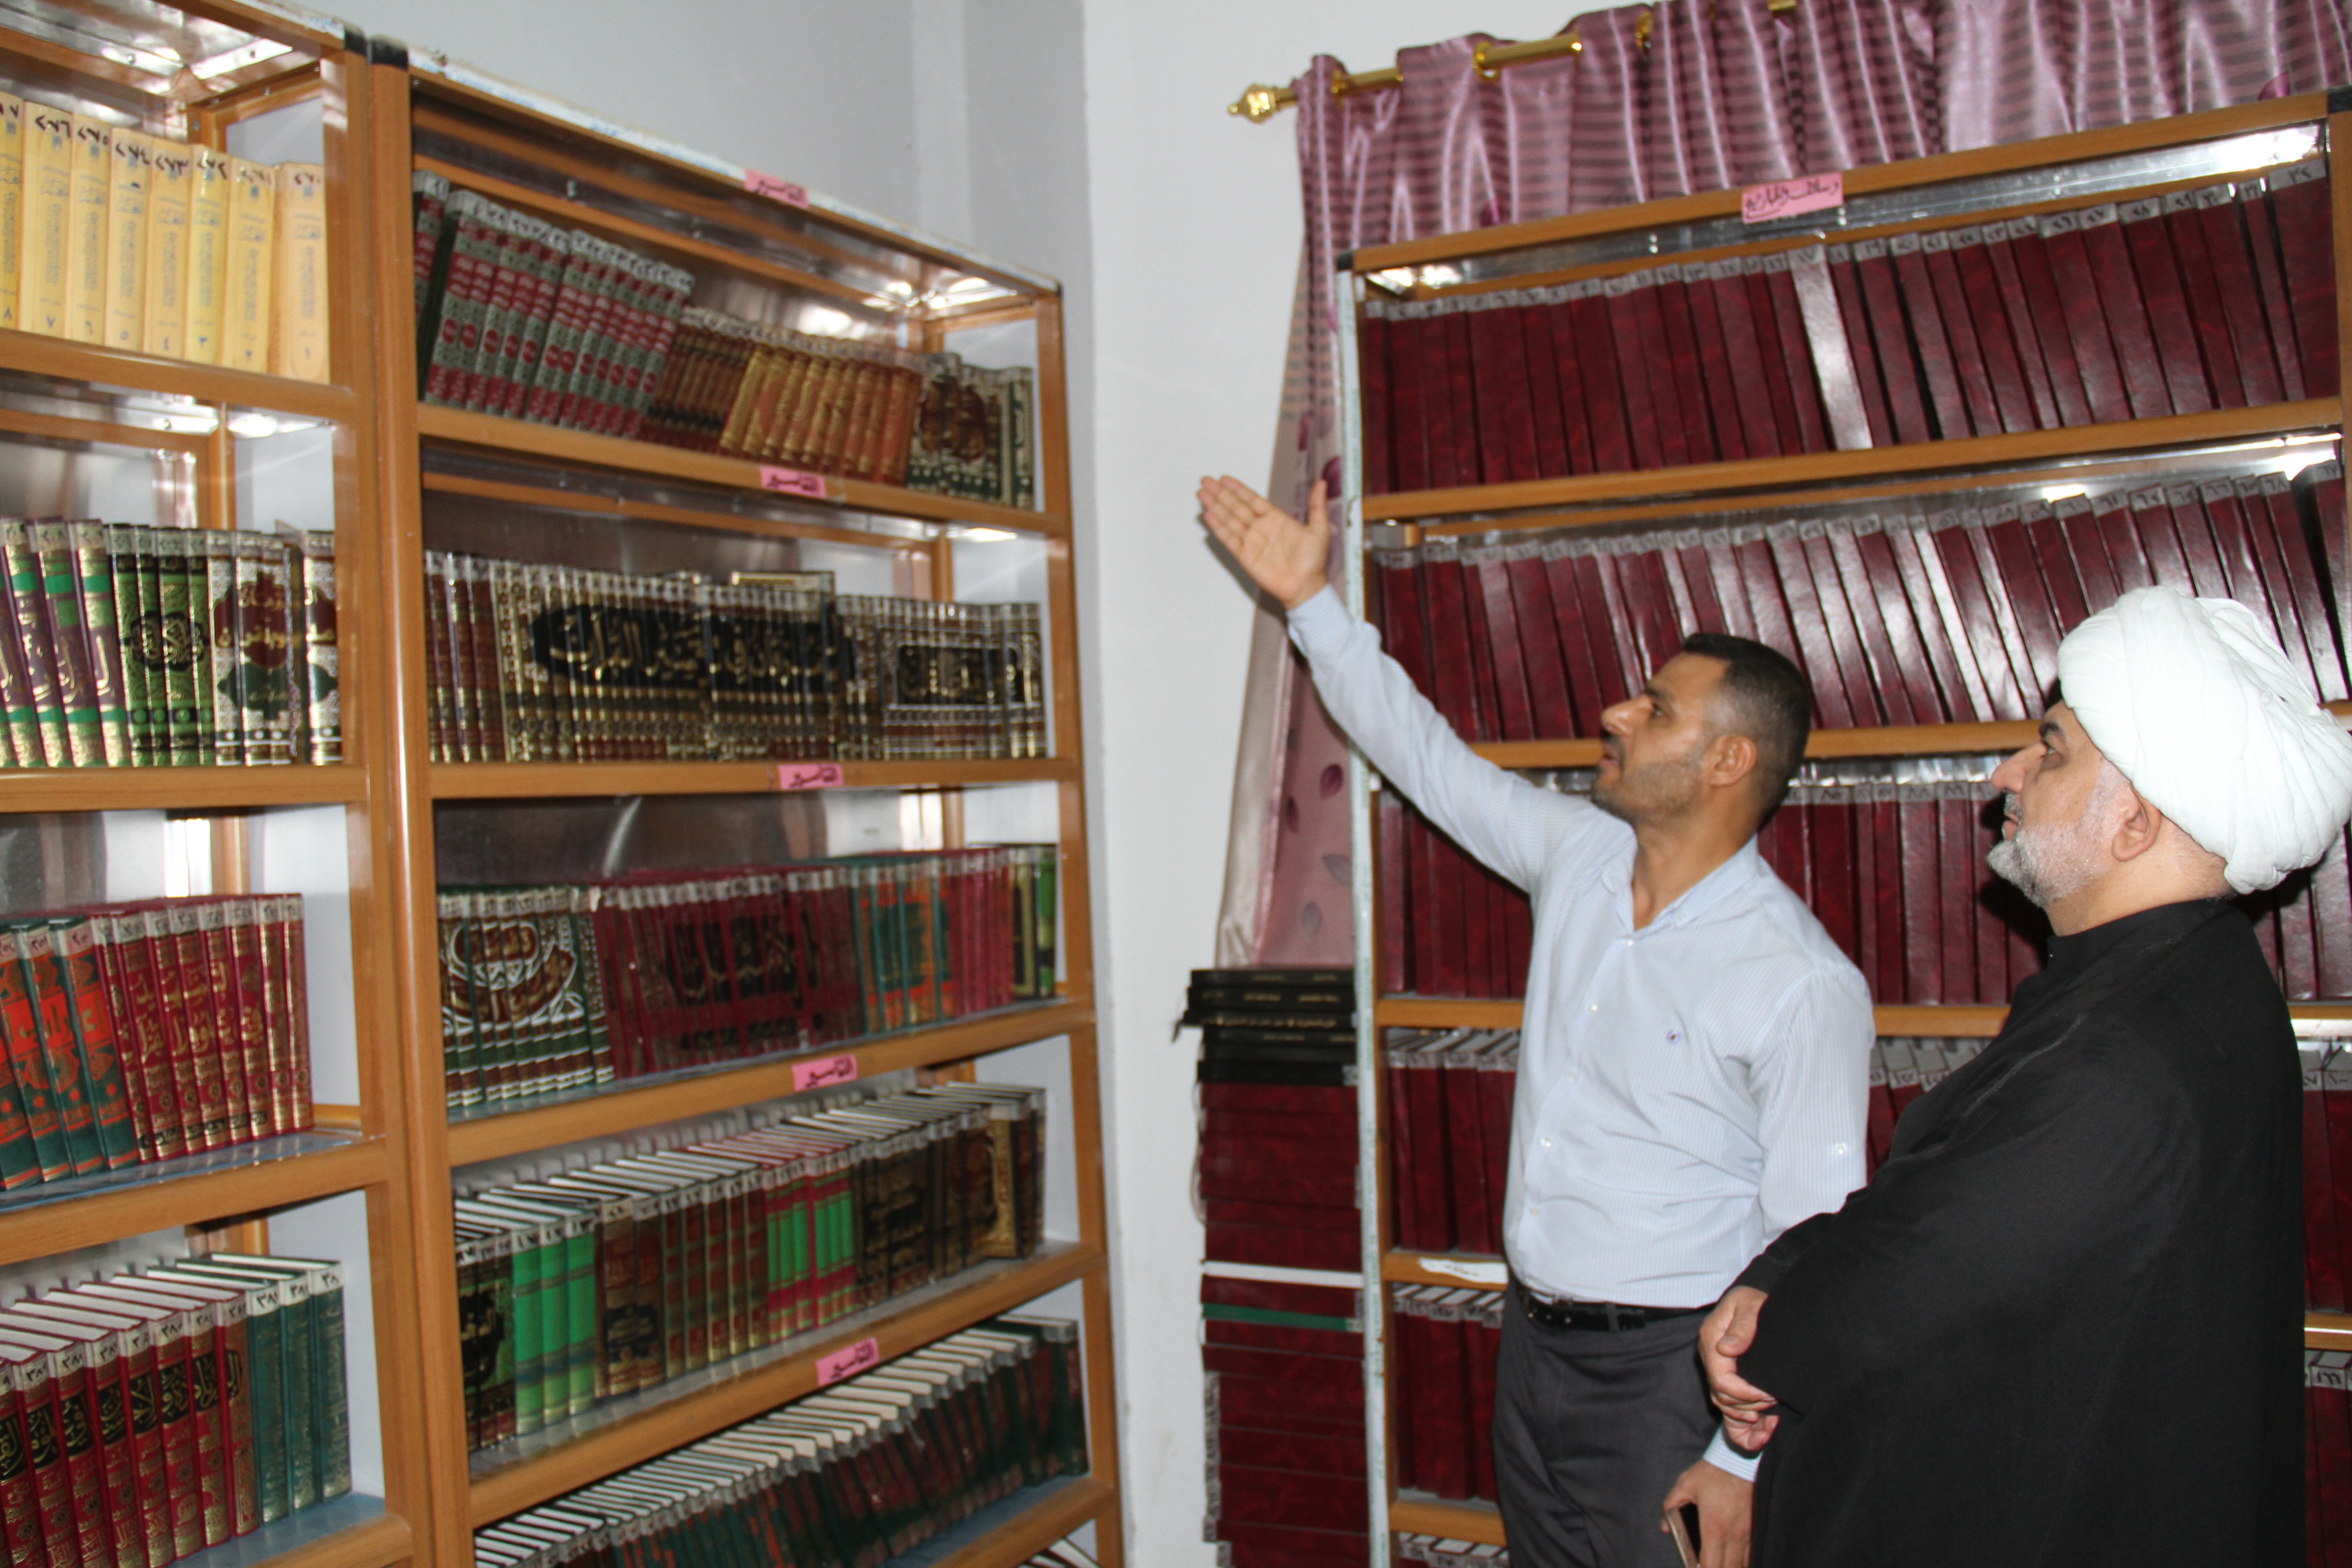 عمادة كلية التربية في جامعة واسط تشيد بإنجازات العتبة العباسية المقدسة القرآنية